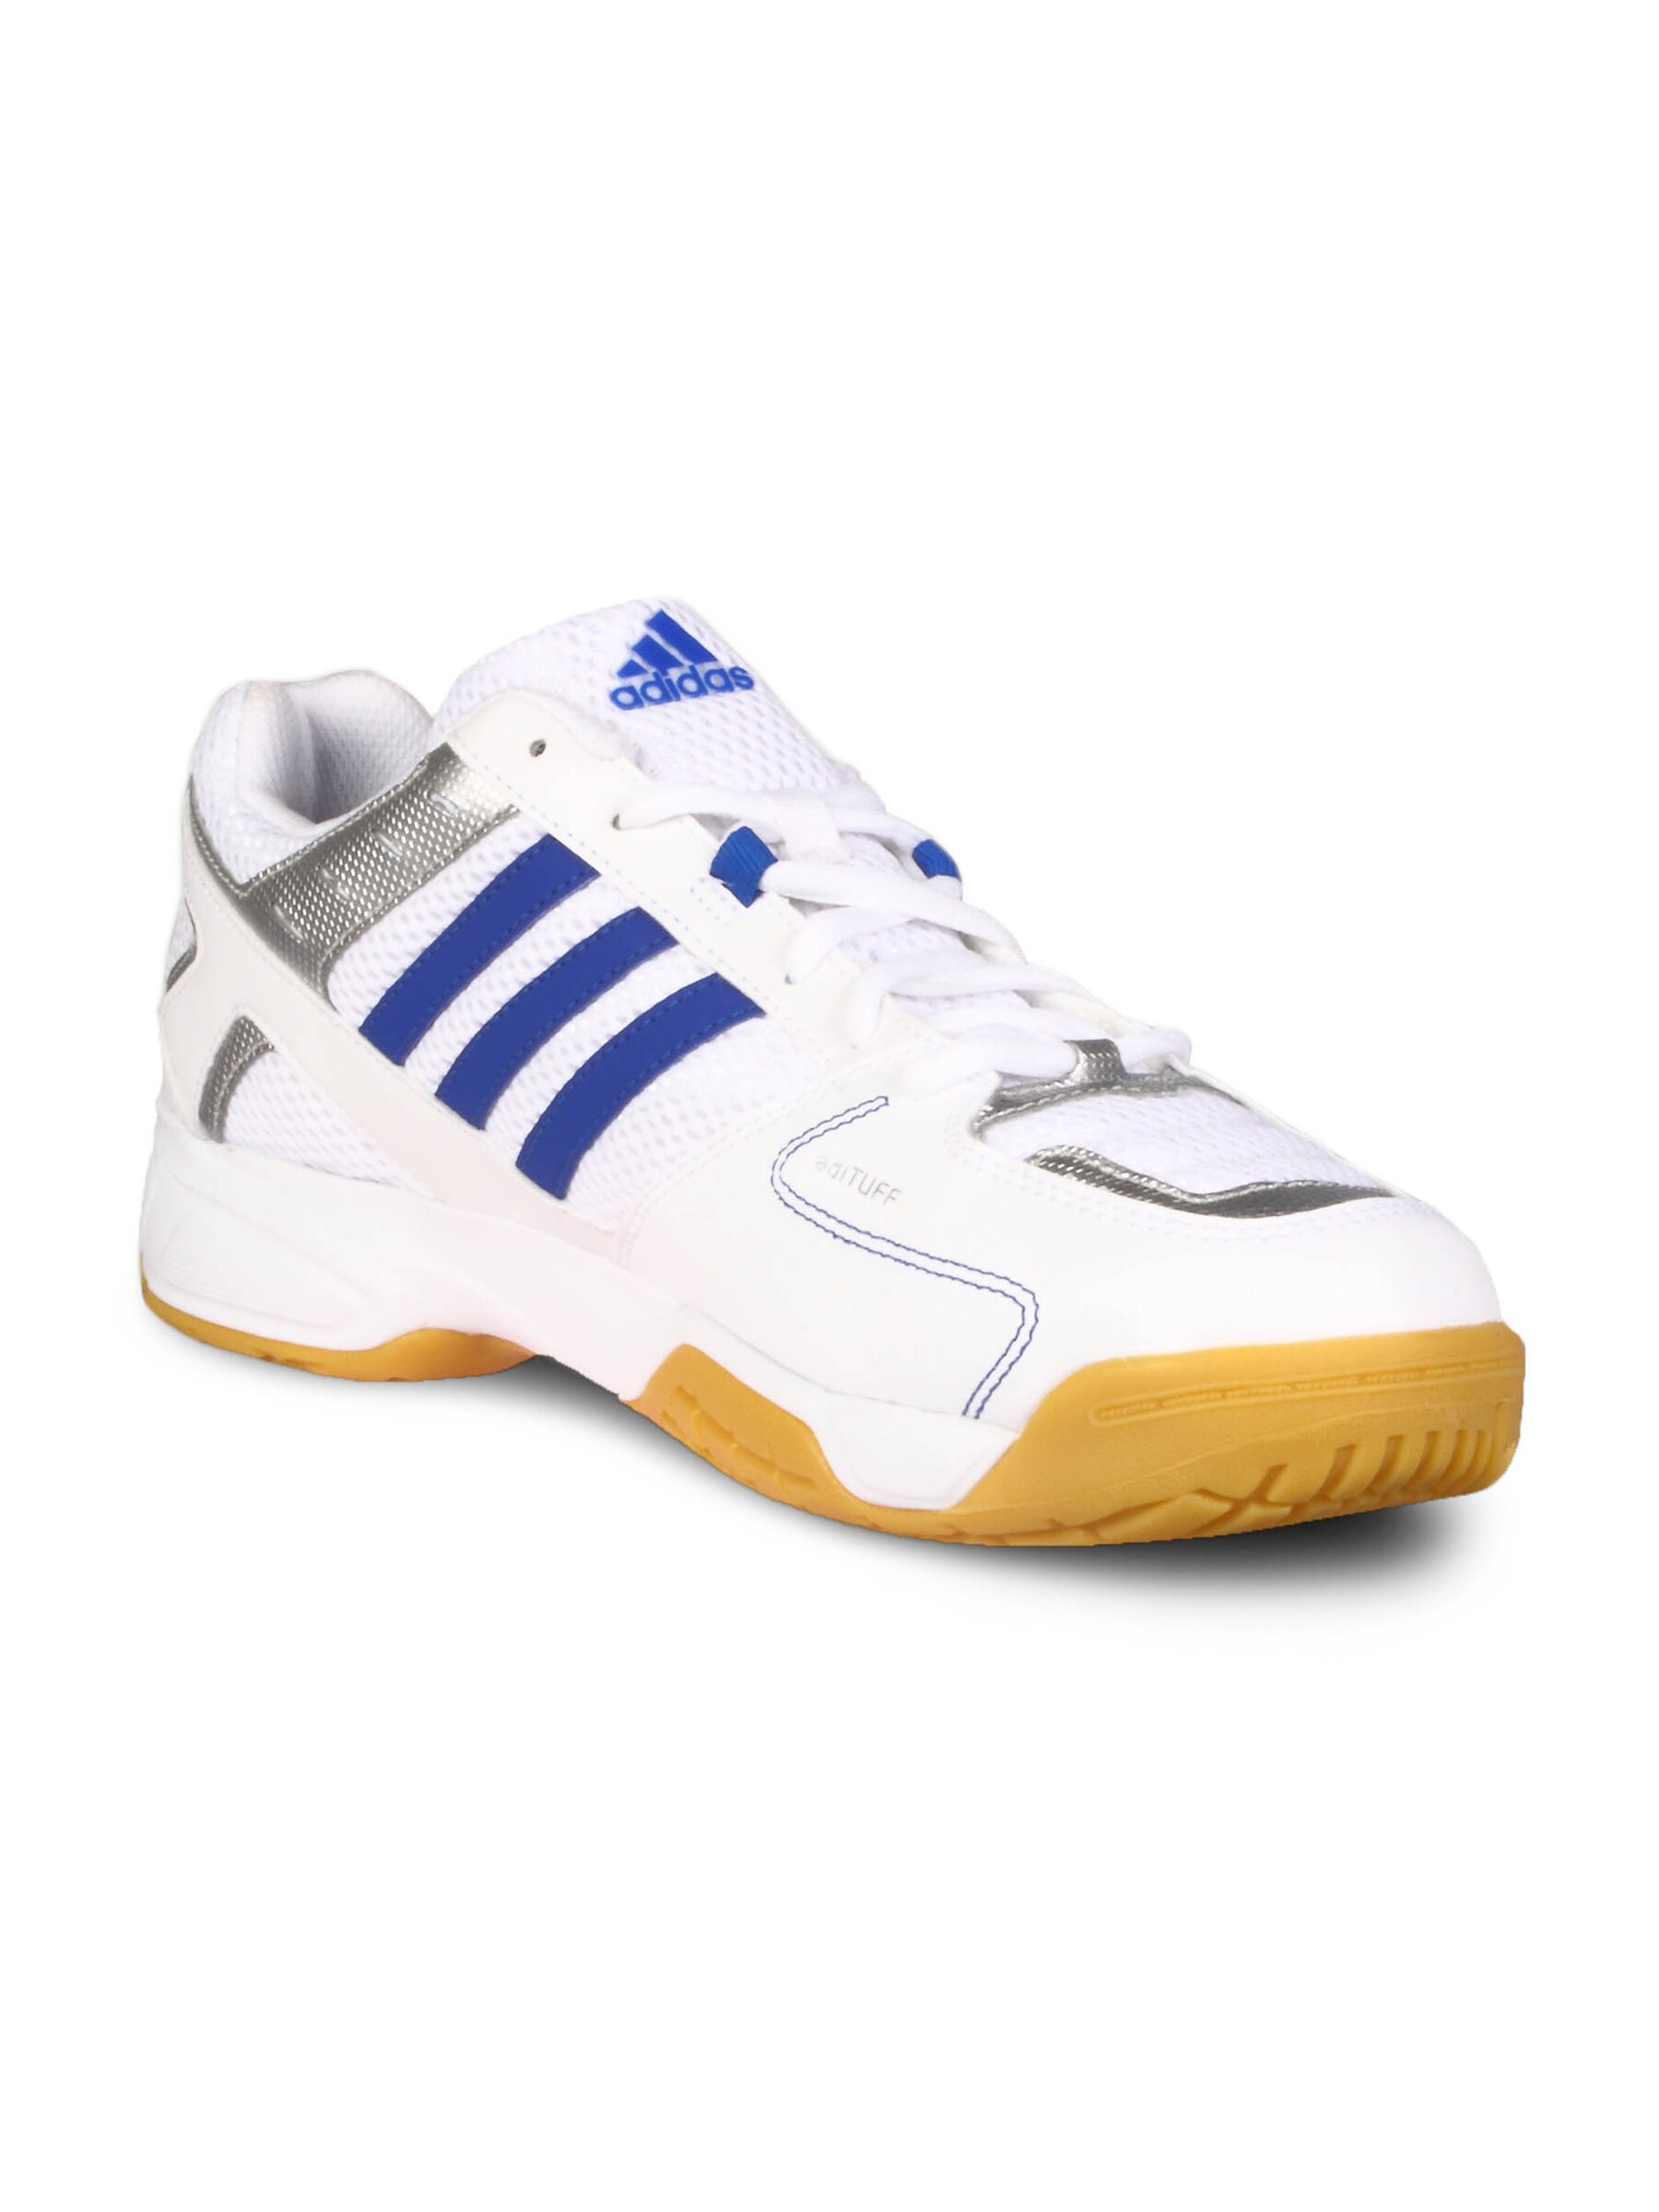 ADIDAS Men Court White Blue Metallic Stripes Shoe